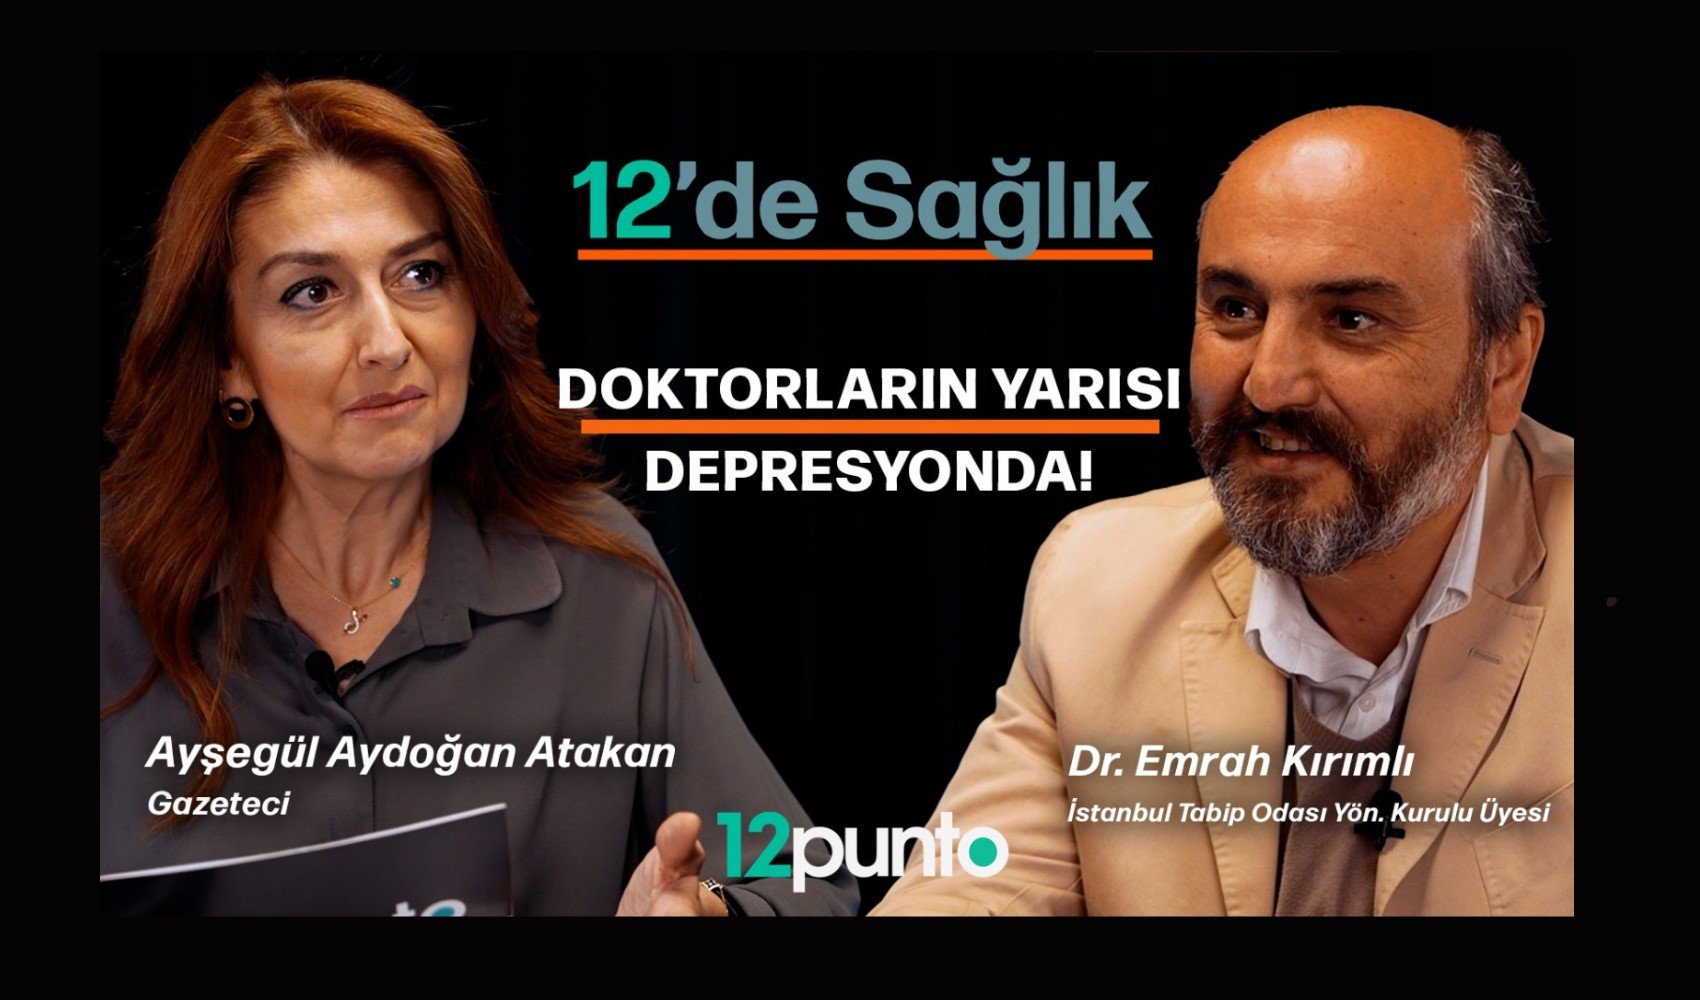 Ayşegül Aydoğan Atakan'ın sunduğu 12'de Sağlık programına Dr. Emrah Kırımlı konuk oldu: 'Doktorların yarısı depresyonda'